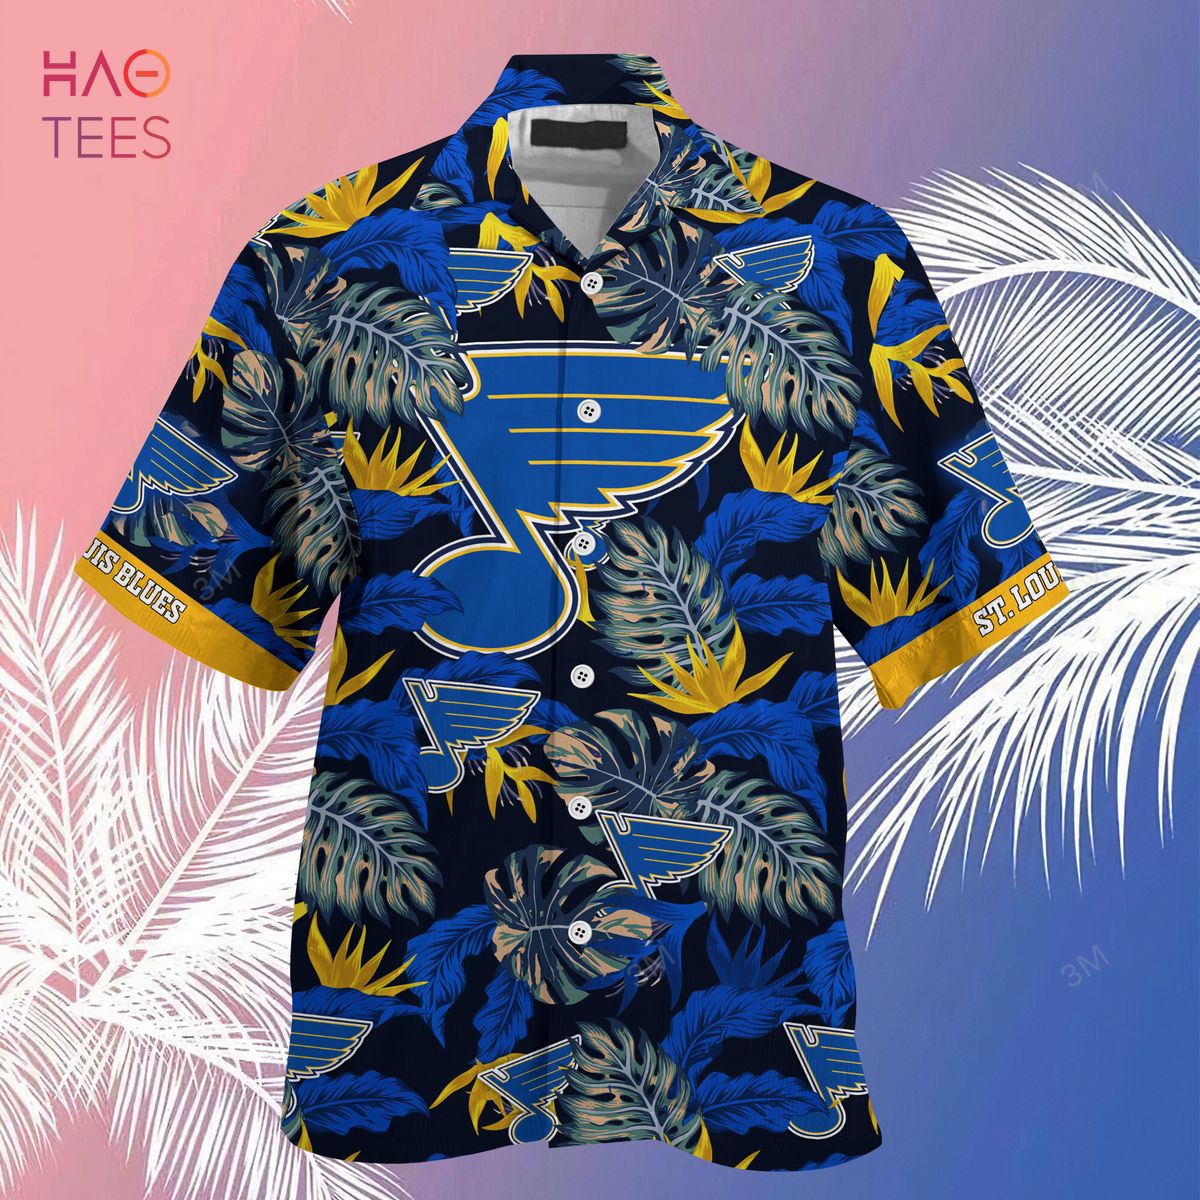 LIMITED] St. Louis Blues NHL Hawaiian Shirt And Shorts, New